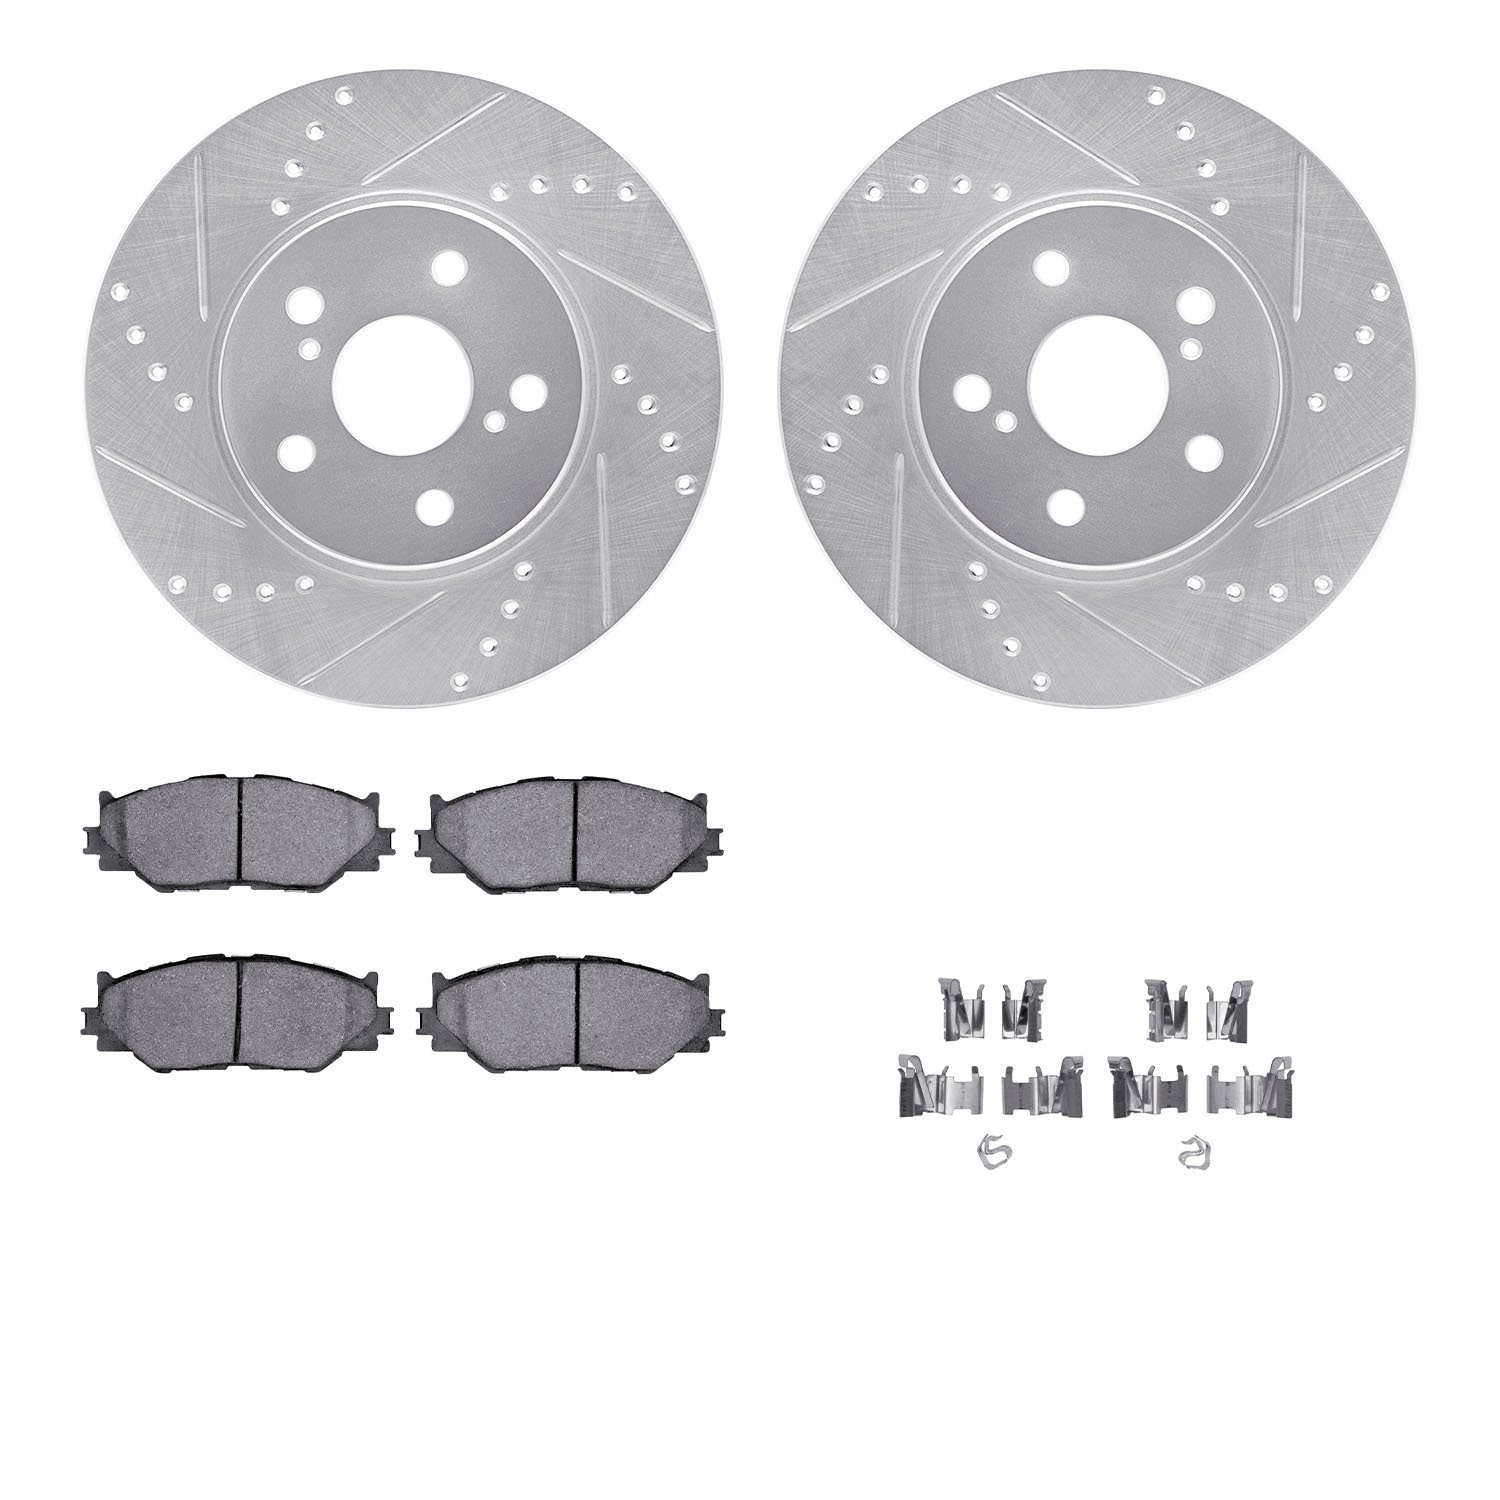 7312-76153 Drilled/Slotted Brake Rotor with 3000-Series Ceramic Brake Pads Kit & Hardware [Silver], 2006-2015 Lexus/Toyota/Scion